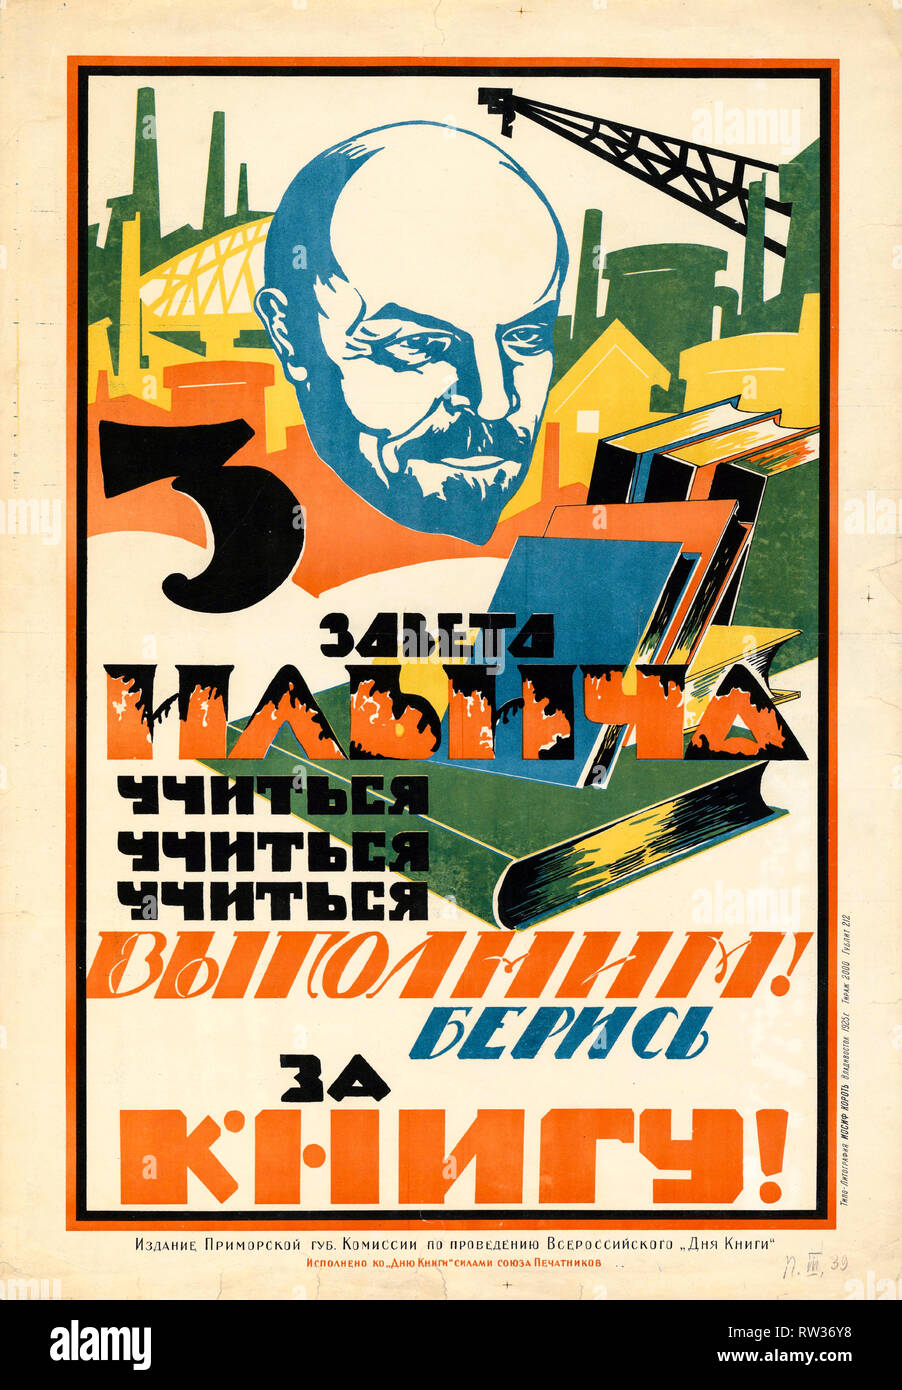 Affiche de propagande soviétique, les 3 préceptes d'Ilyich - étudier, étudier, étudier - remplir ! Tenir le livre !, 1925 Banque D'Images